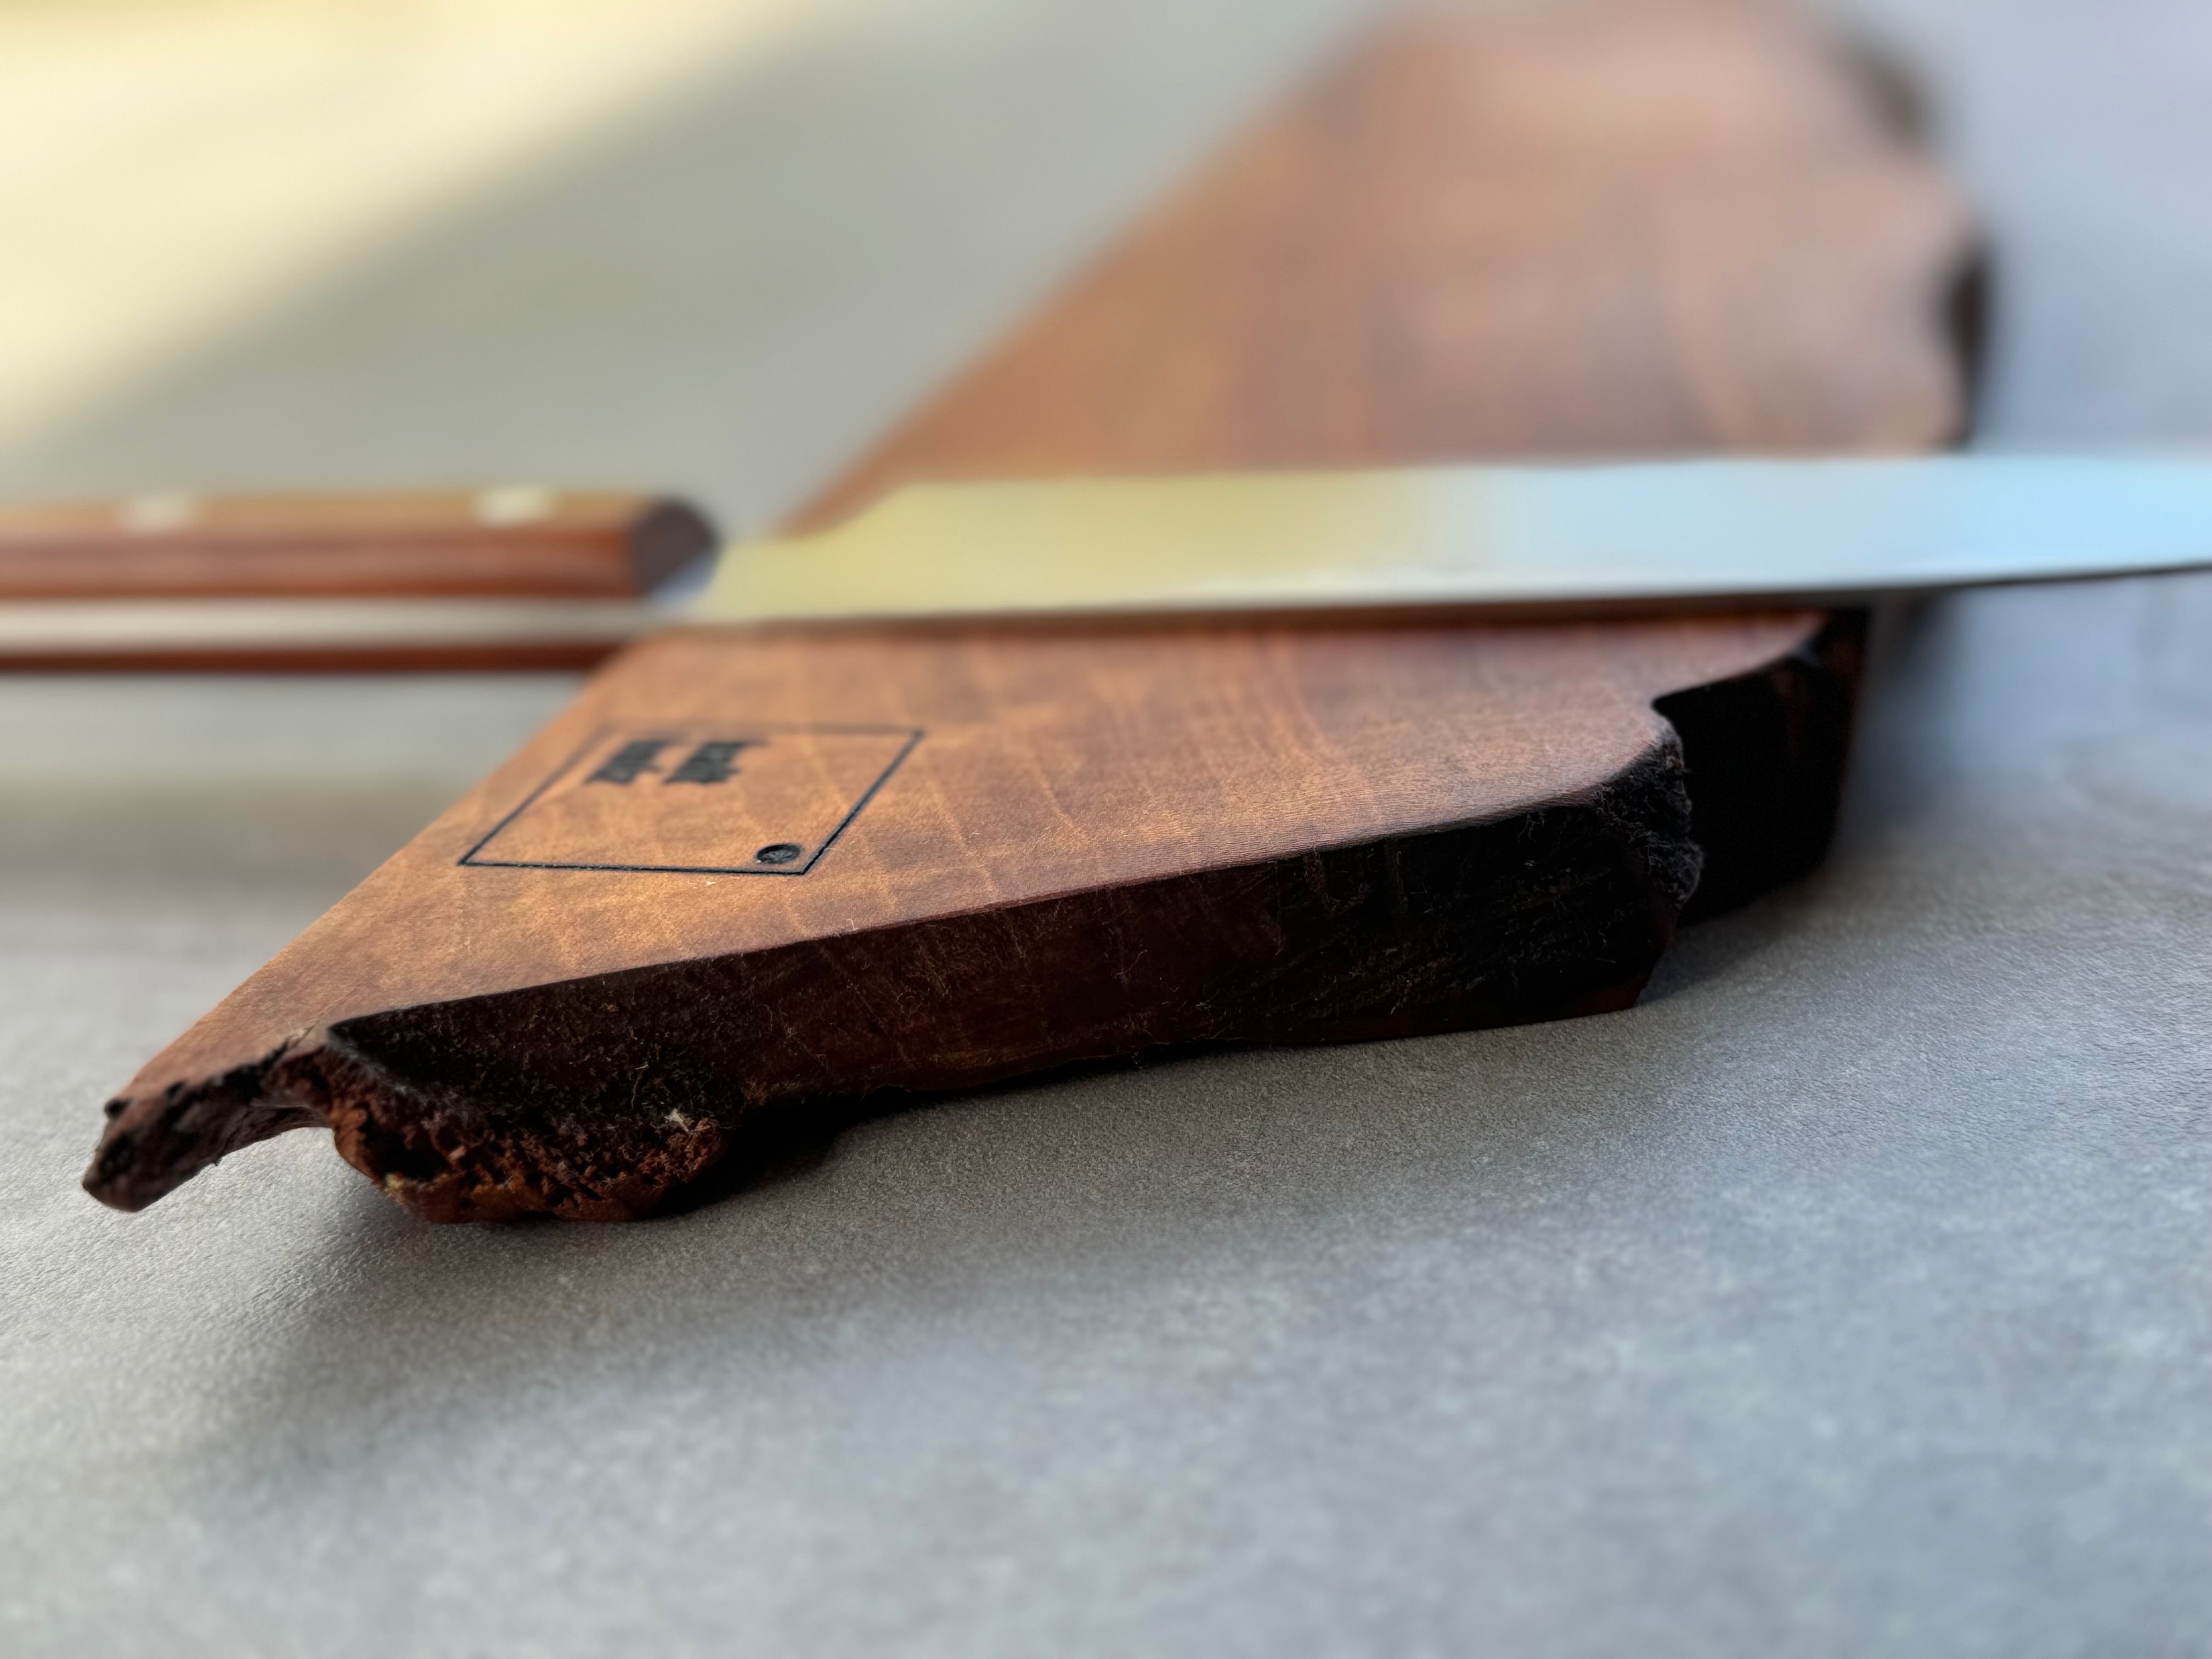 Organischer Form und Baumkante im Detail bei einem Messerhalter.